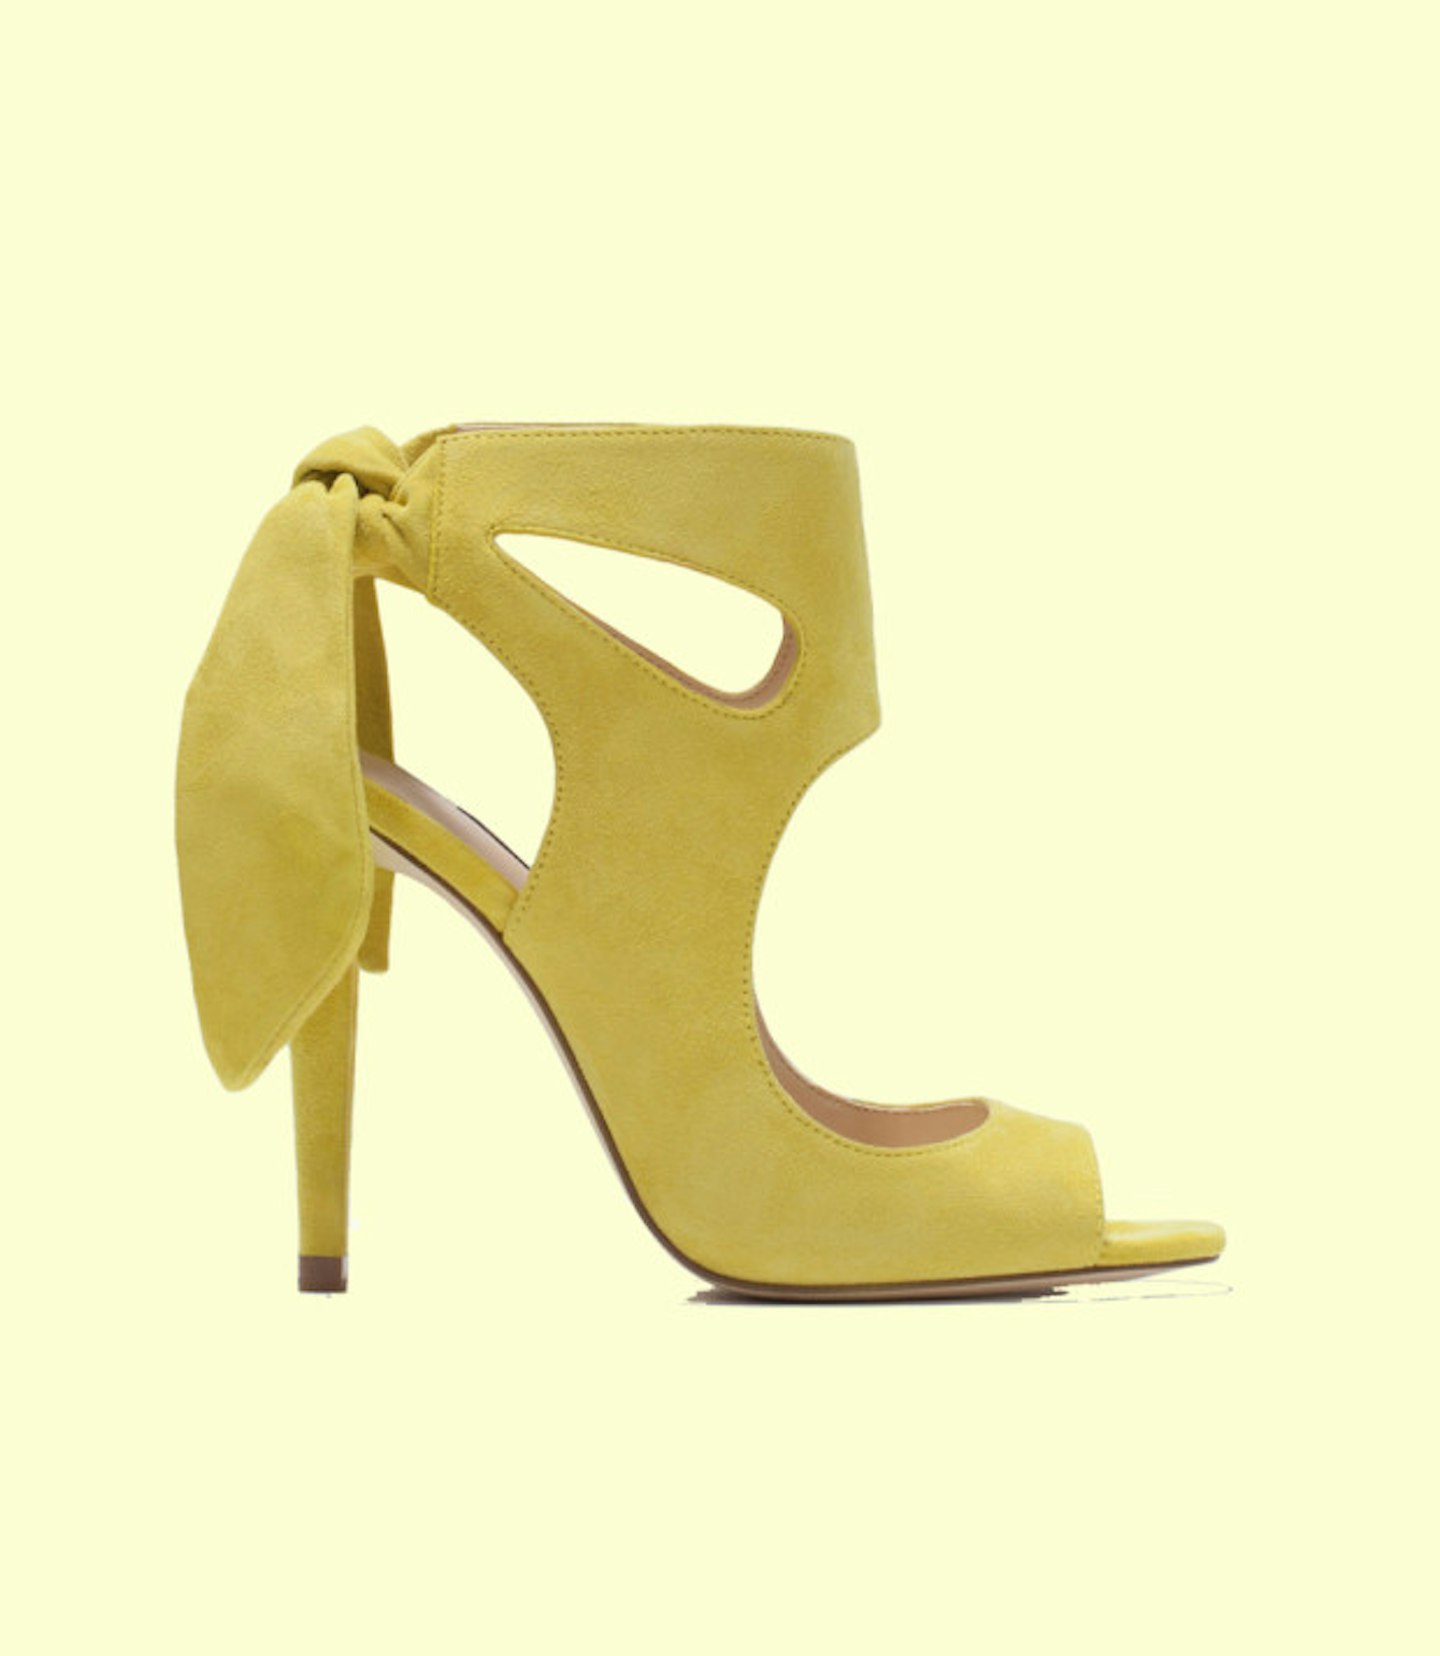 oscars-shopping-zara-yellow-suede-heels